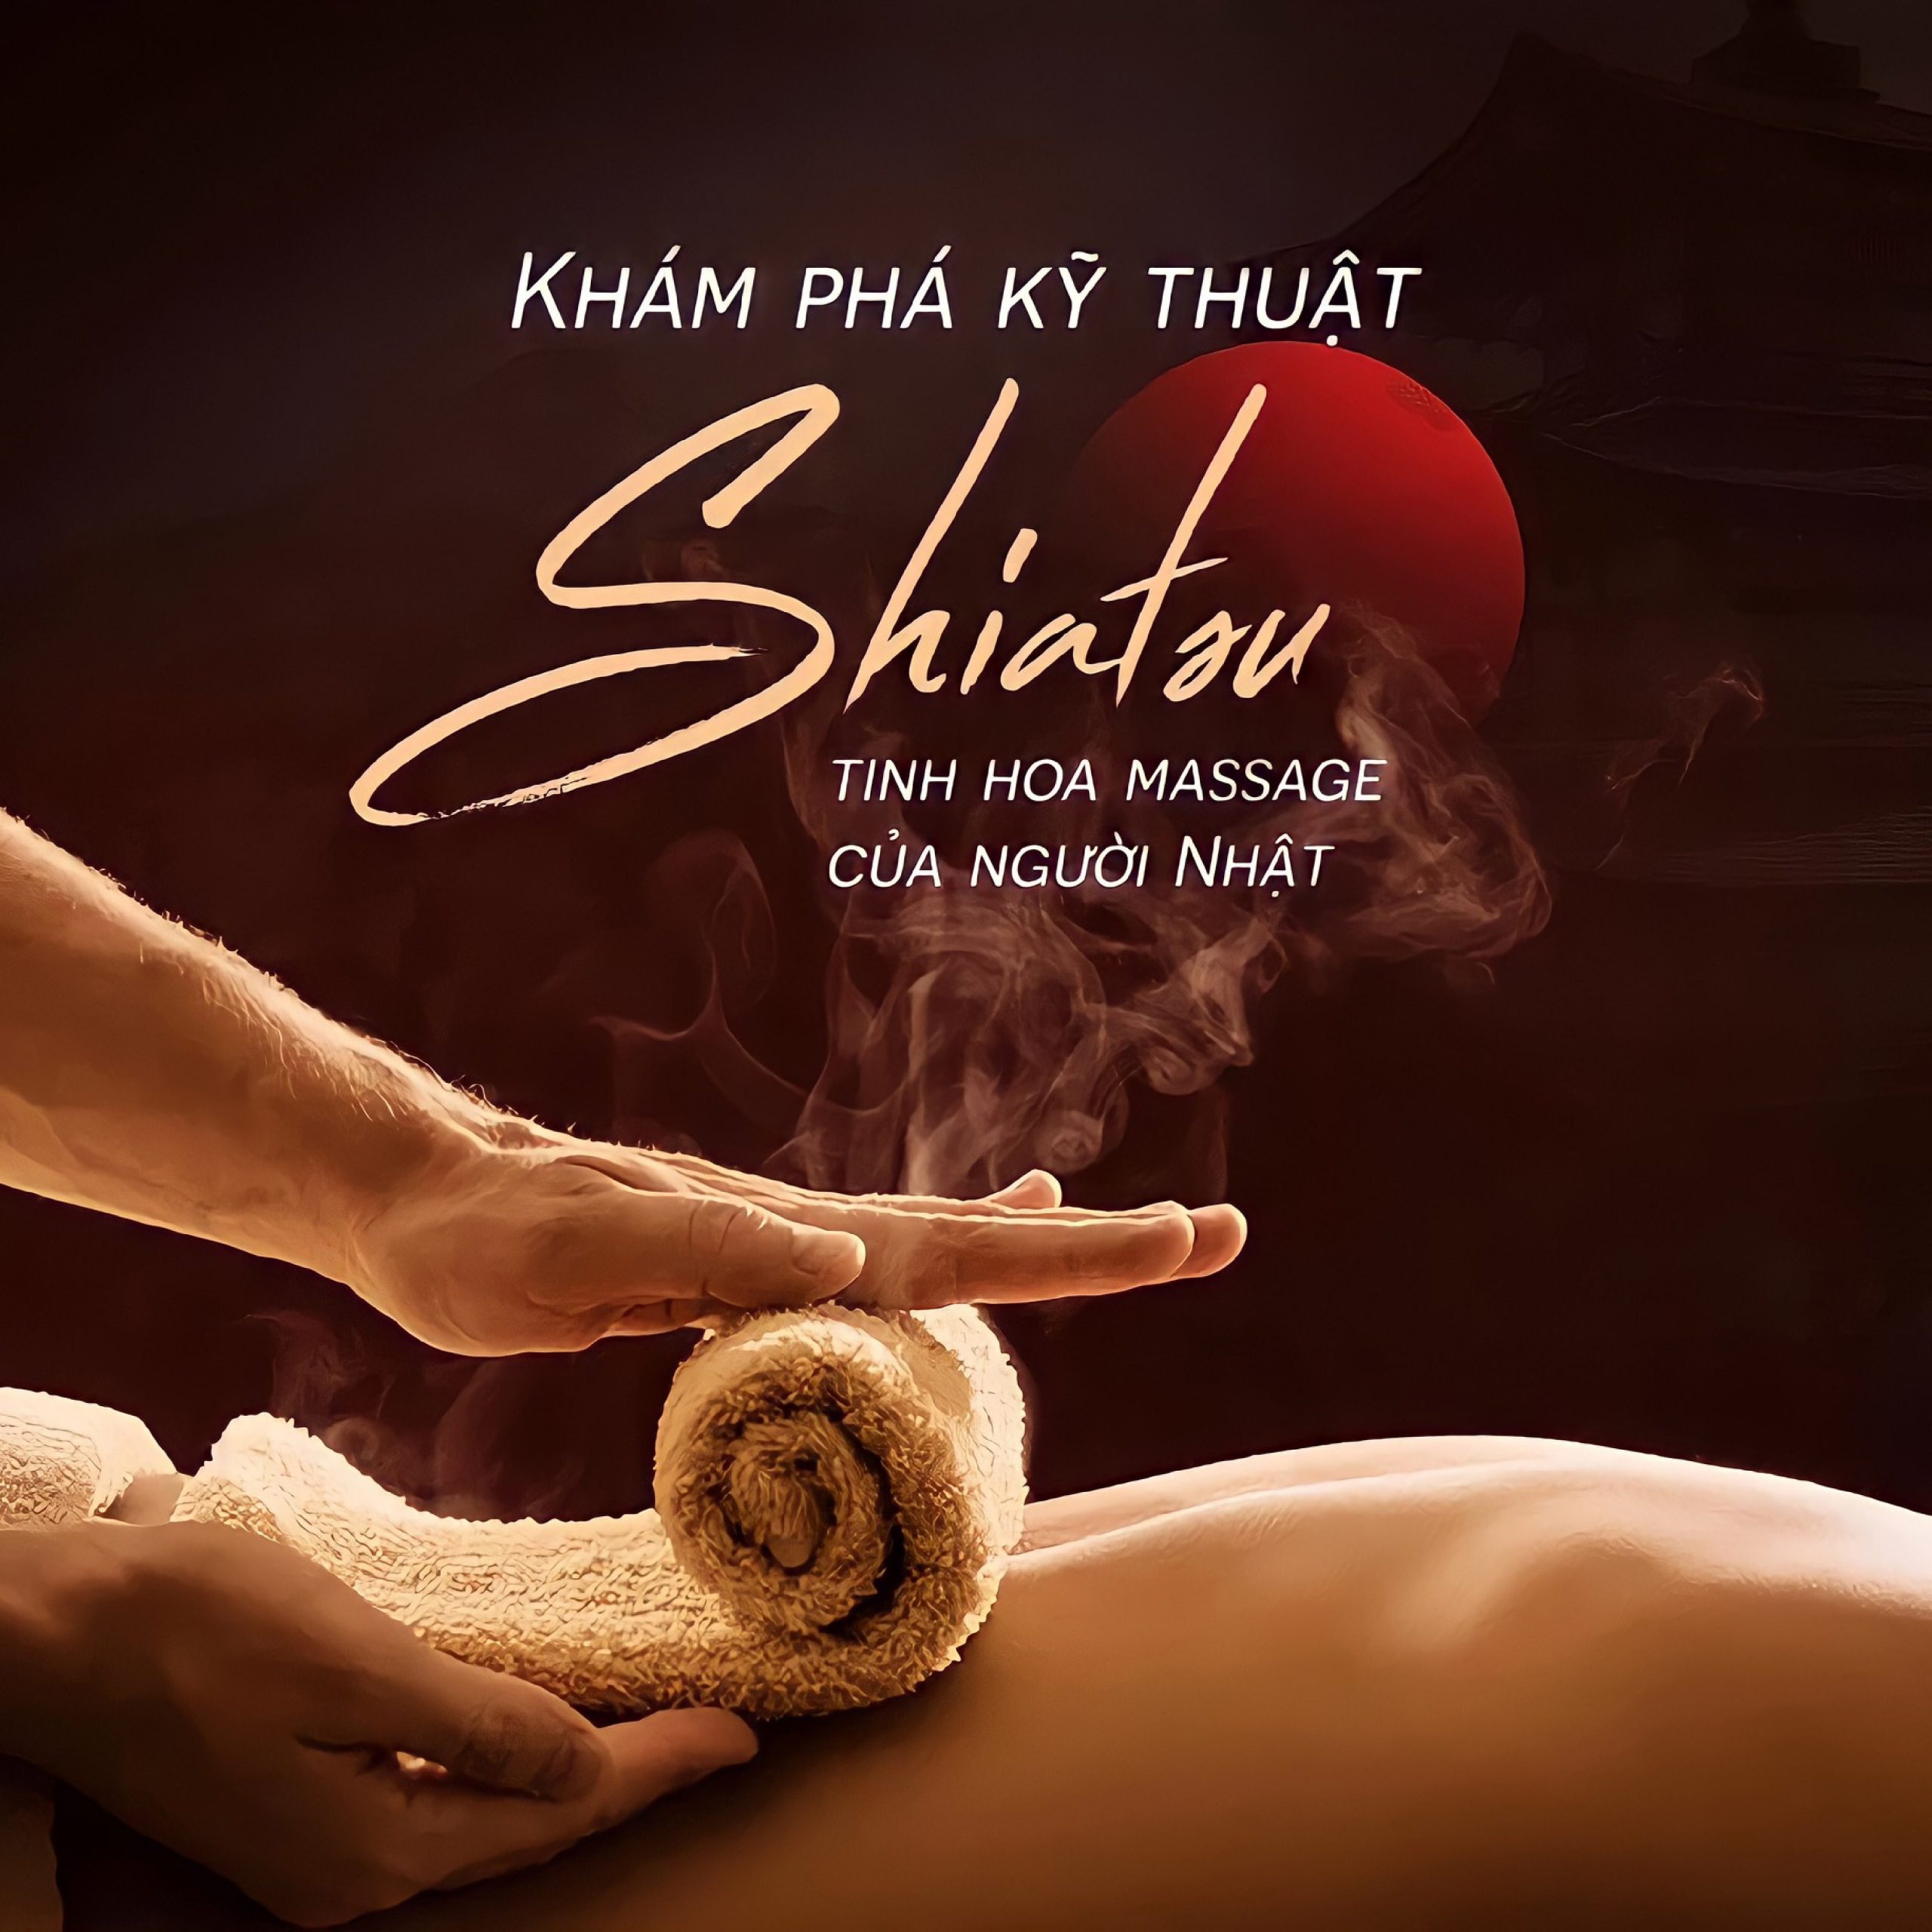 Ghế massage Washima tích hợp phương pháp massage Shiatsu Nhật Bản